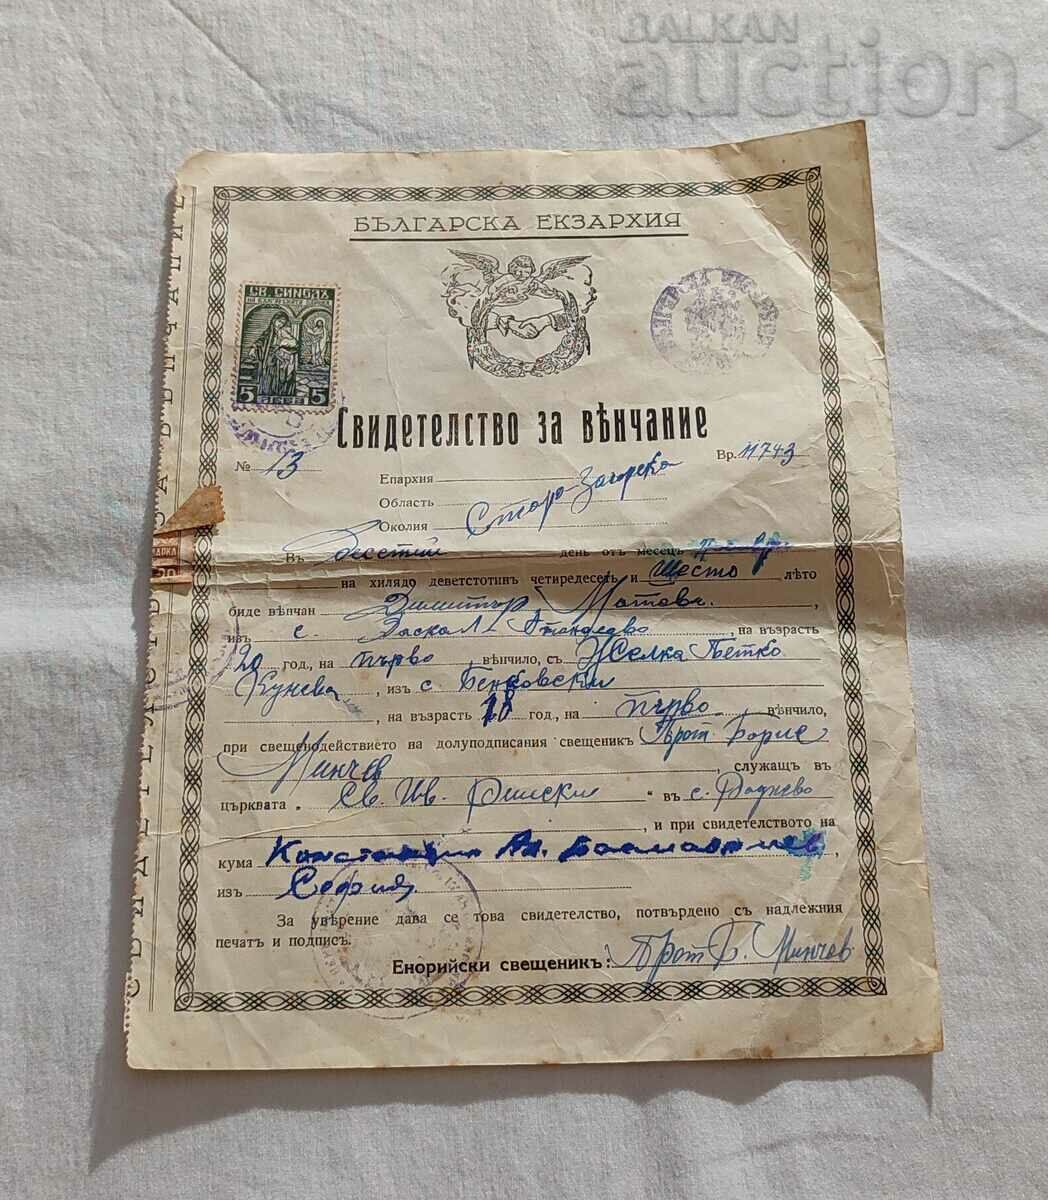 ΛΕΞΗ ΓΑΜΟΥ VI.RADNEVO BULGARIA EXARCHY 1946 No. 13